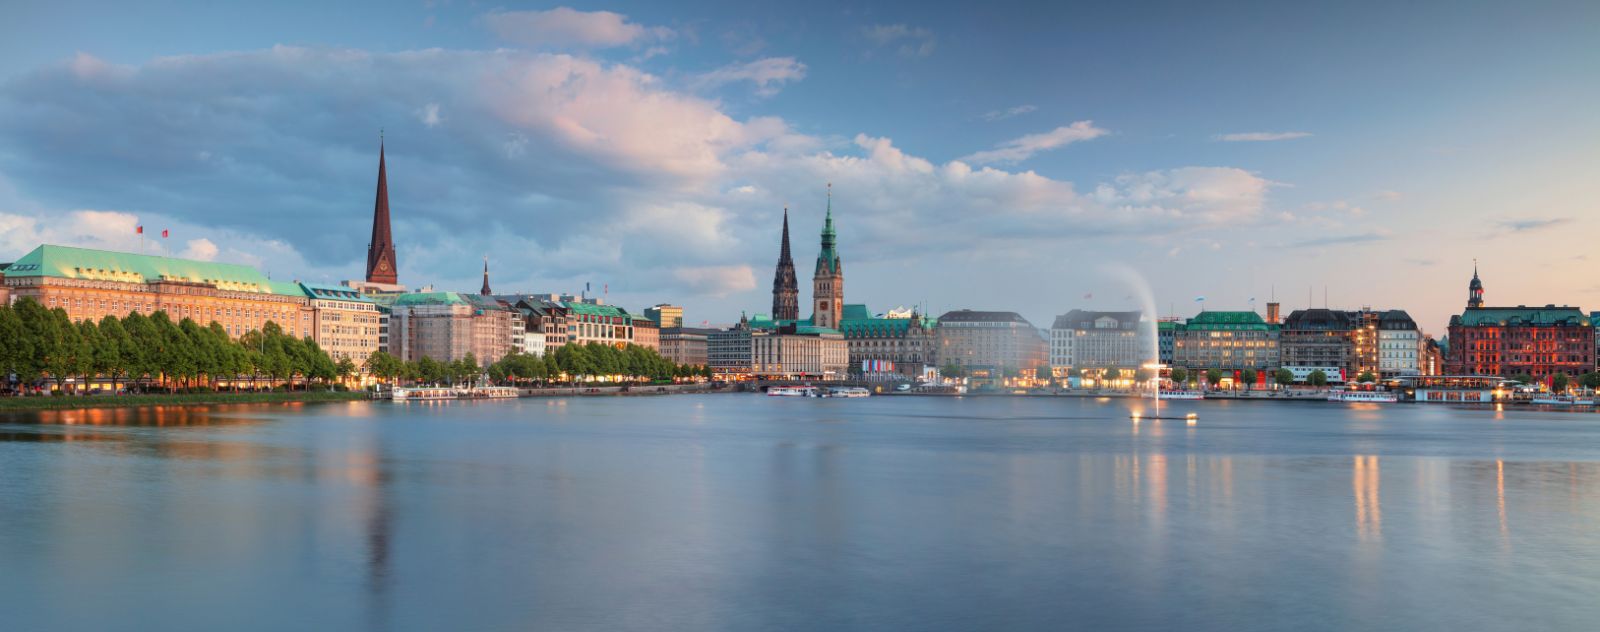 Hamburg panoramic view